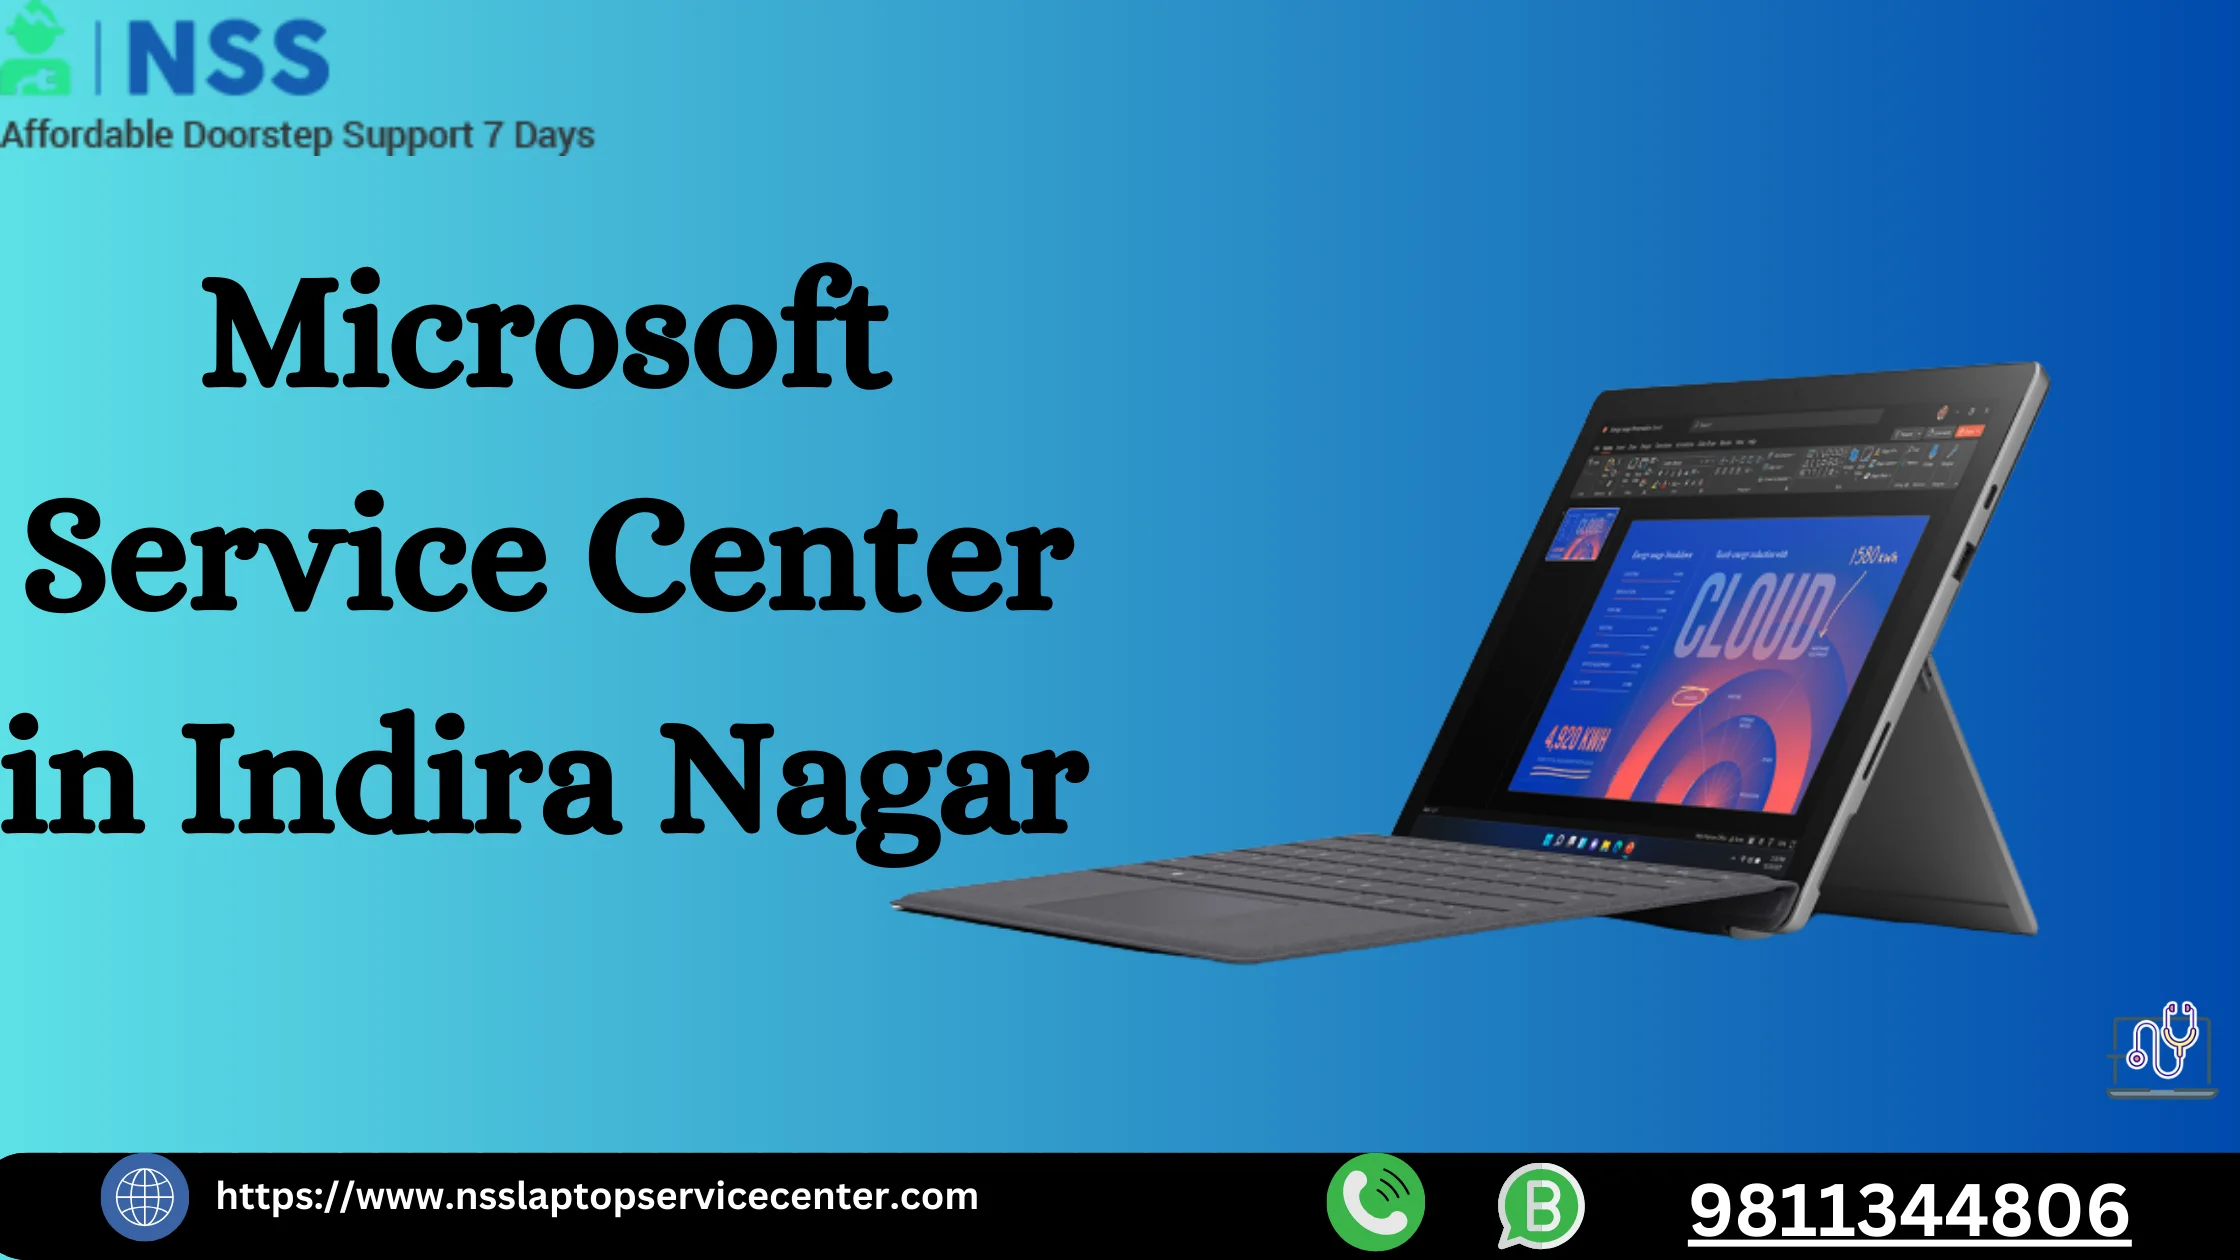 Microsoft Service Center in Indira Nagar Near Lucknow